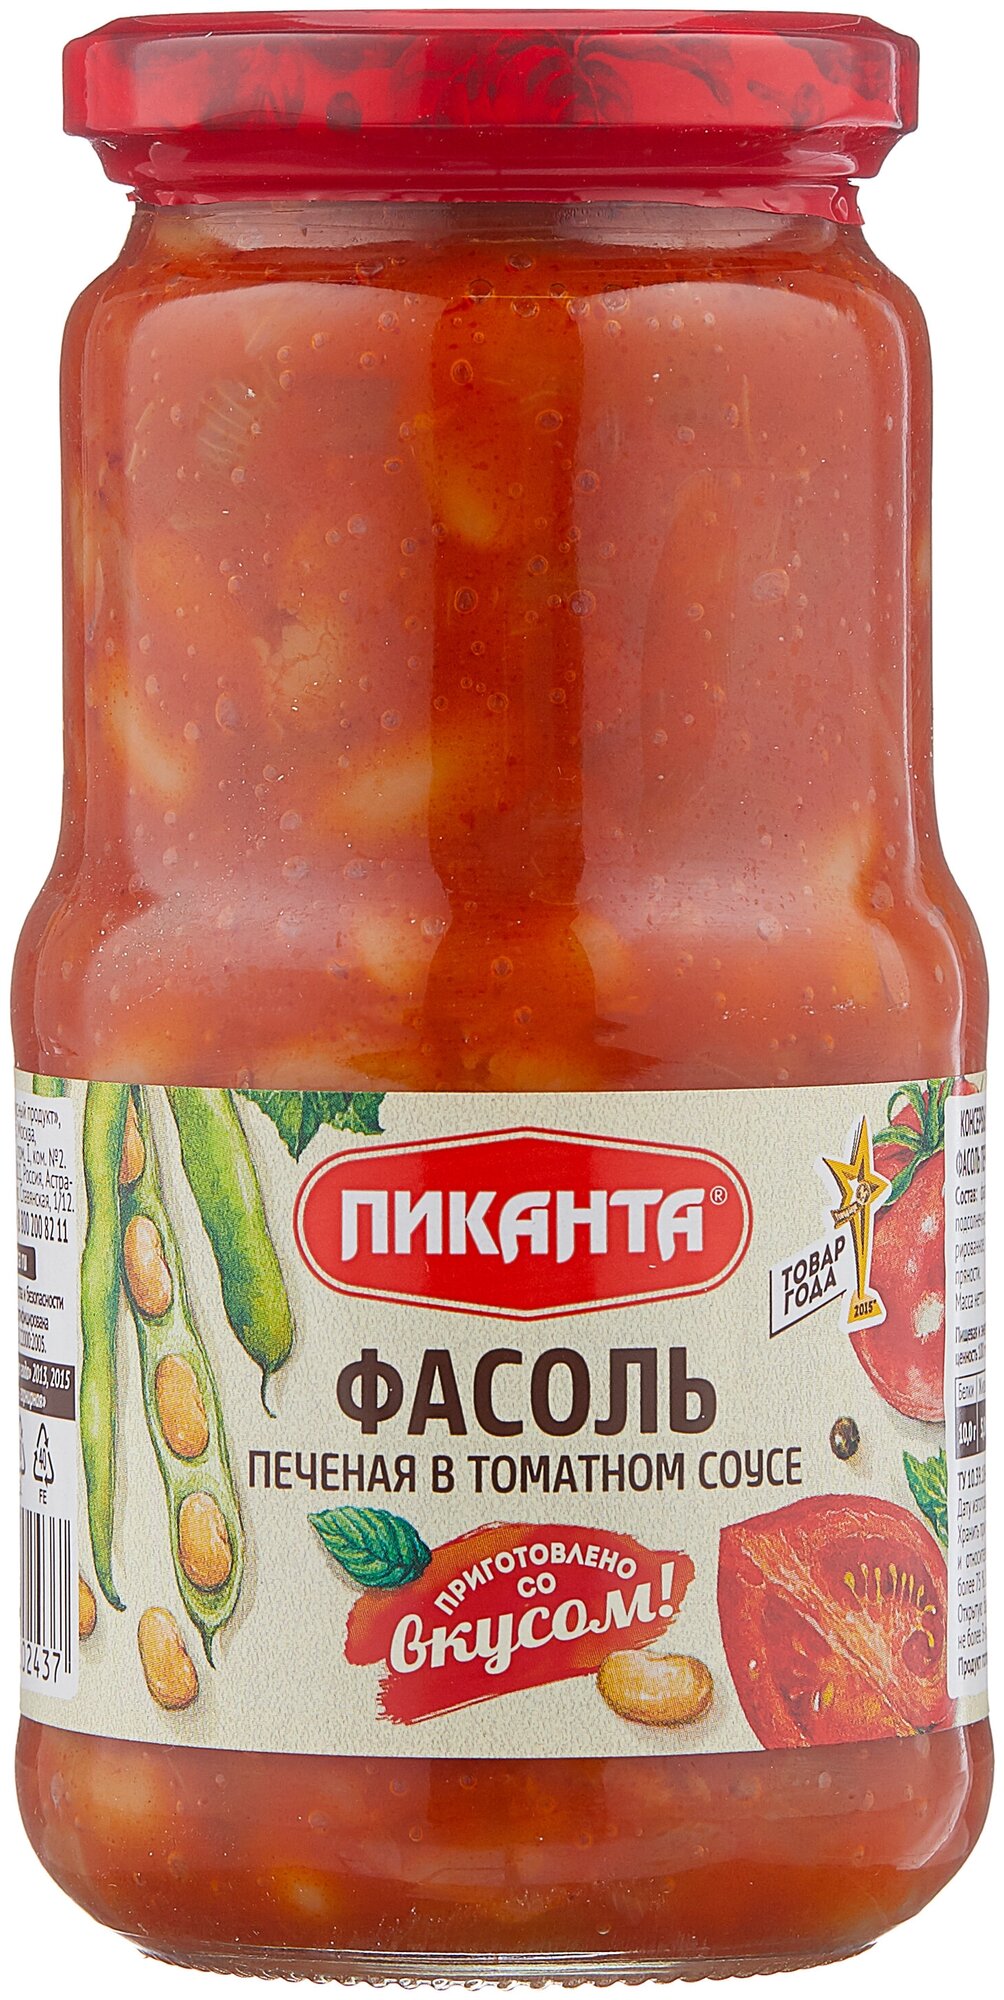 Фасоль Пиканта печеная в томатном соусе, 530 г